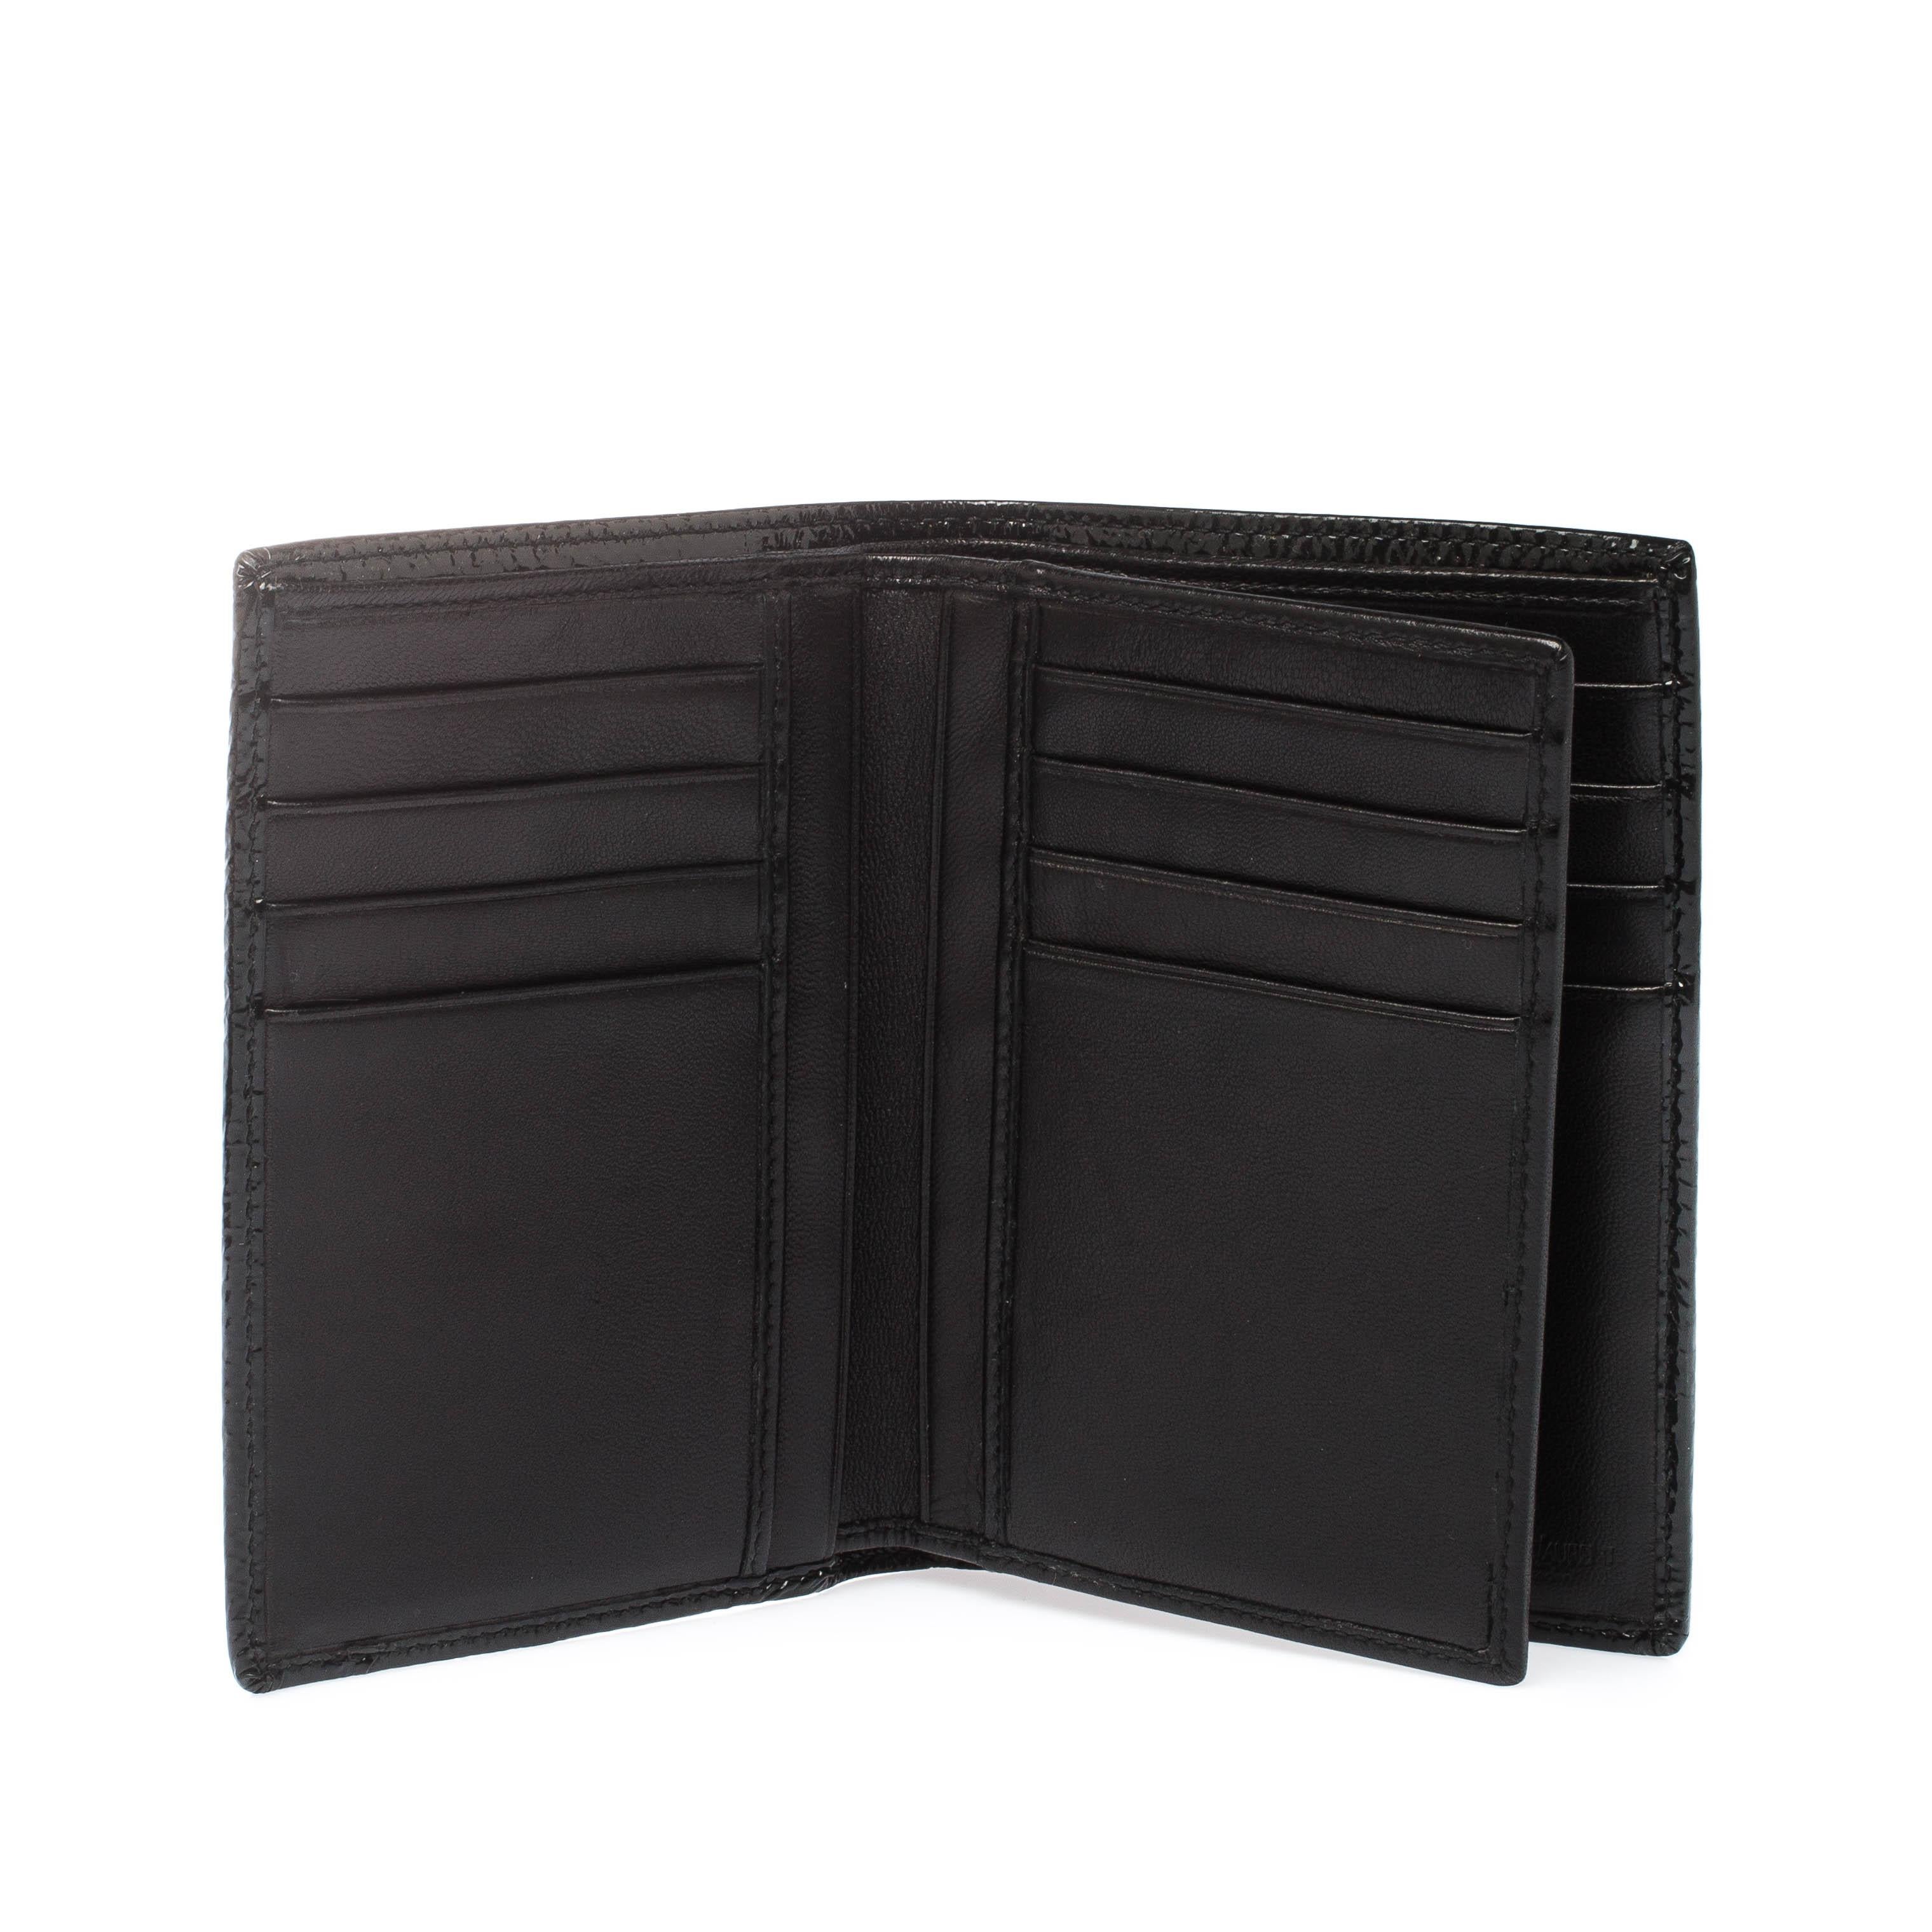 Saint Laurent Paris Black Patent Leather Bifold Wallet 5